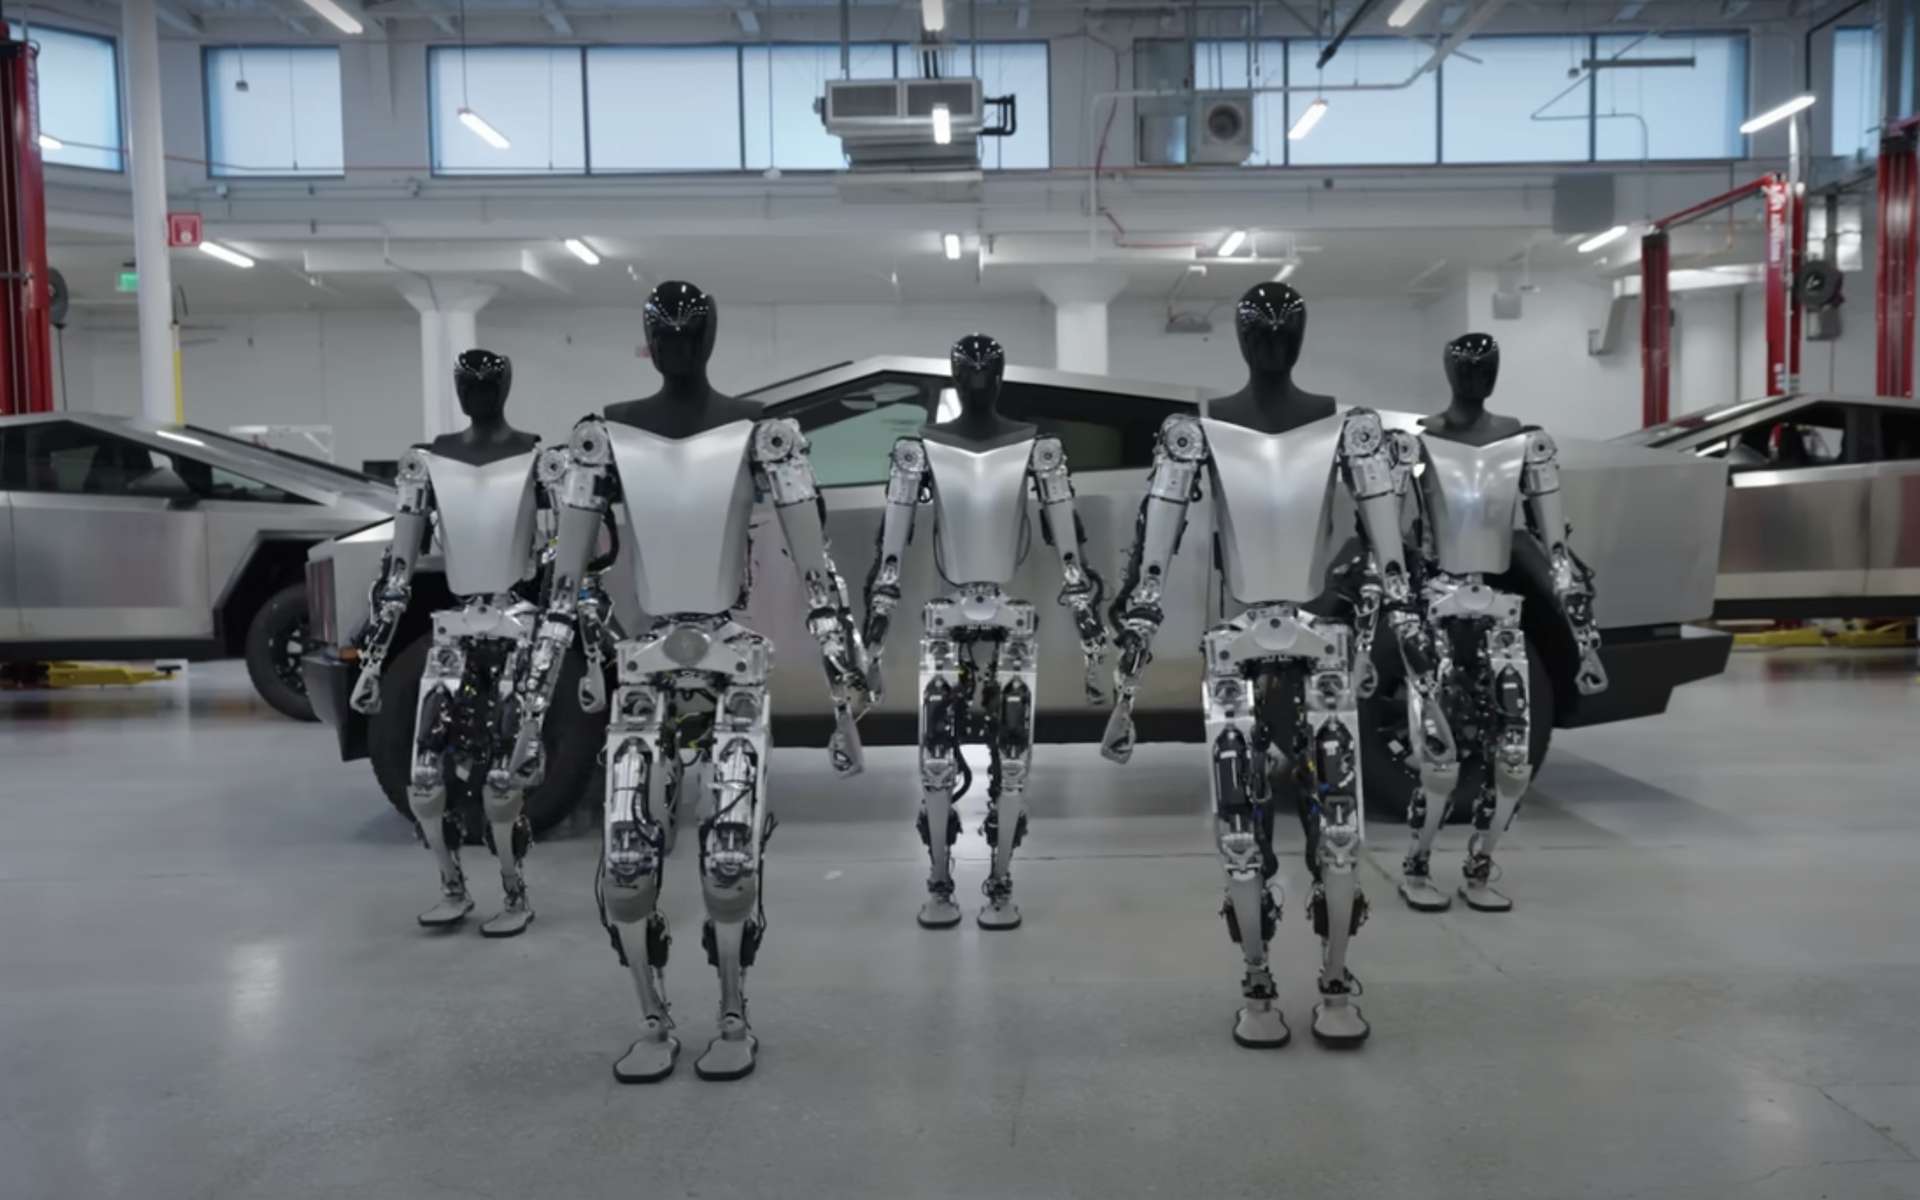 Le robot humanoïde de Tesla montre (enfin) ses capacités en vidéo